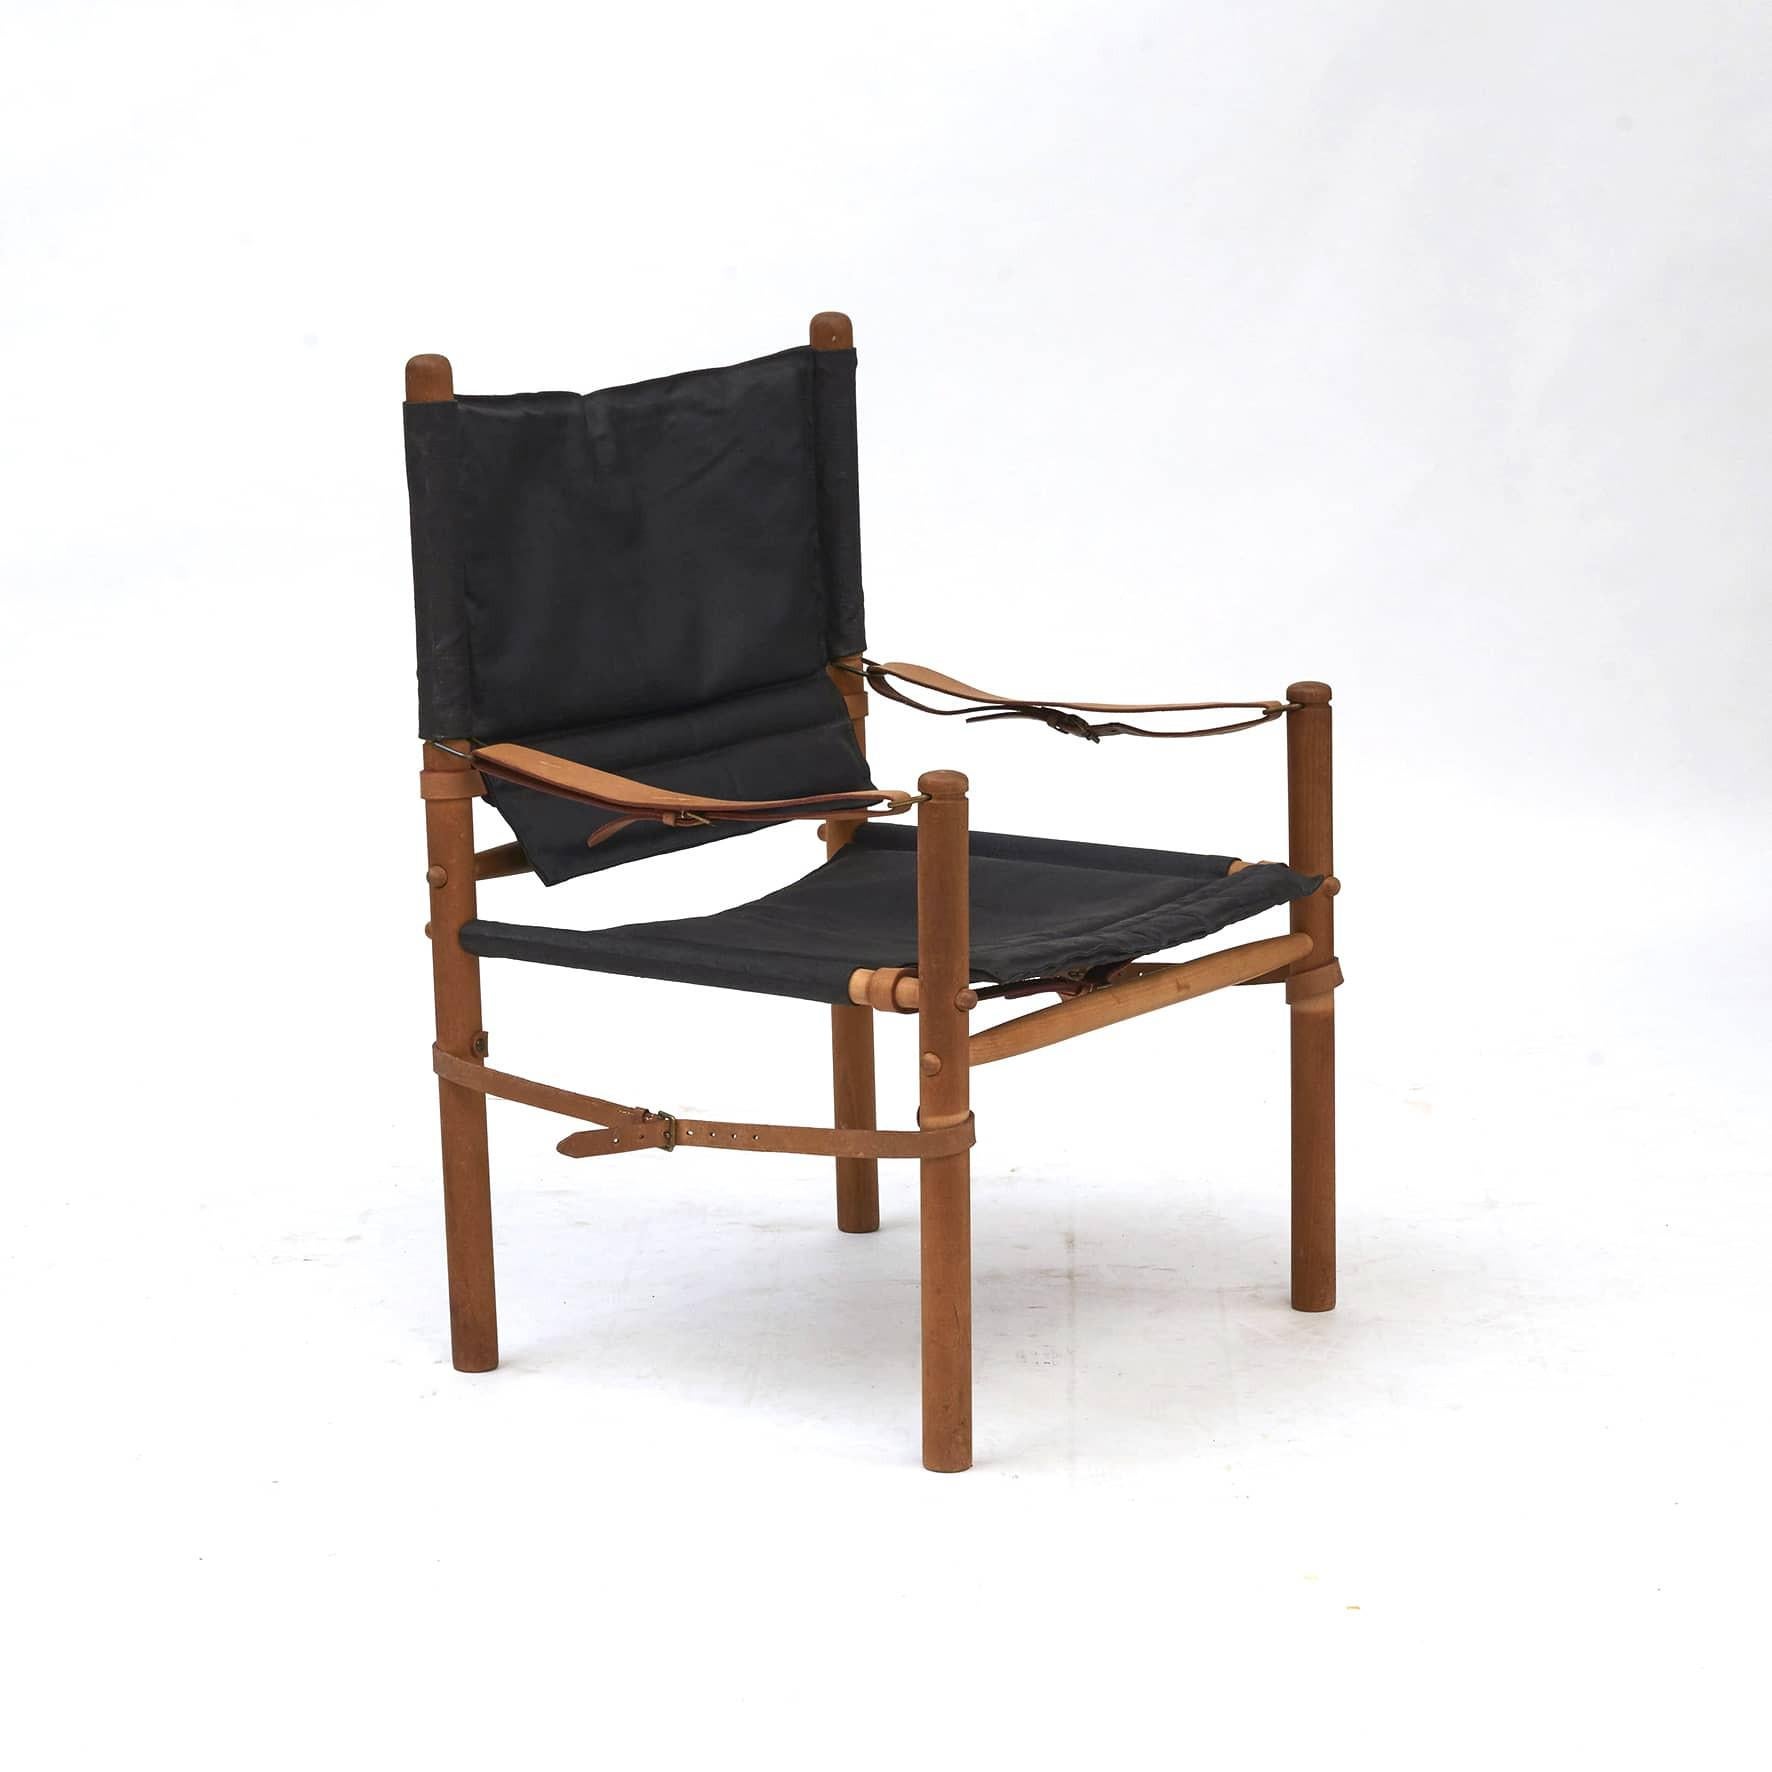 Paar Oasis Safari-Stühle, entworfen von Axel Thygesen für Interna, um 1965.
Entworfen und hergestellt in den 1960er Jahren.
Gestell aus Buche, Sitzfläche aus schwarzem Segeltuch.

Unberührt in gutem Originalzustand.
Wird als Paar verkauft.
  